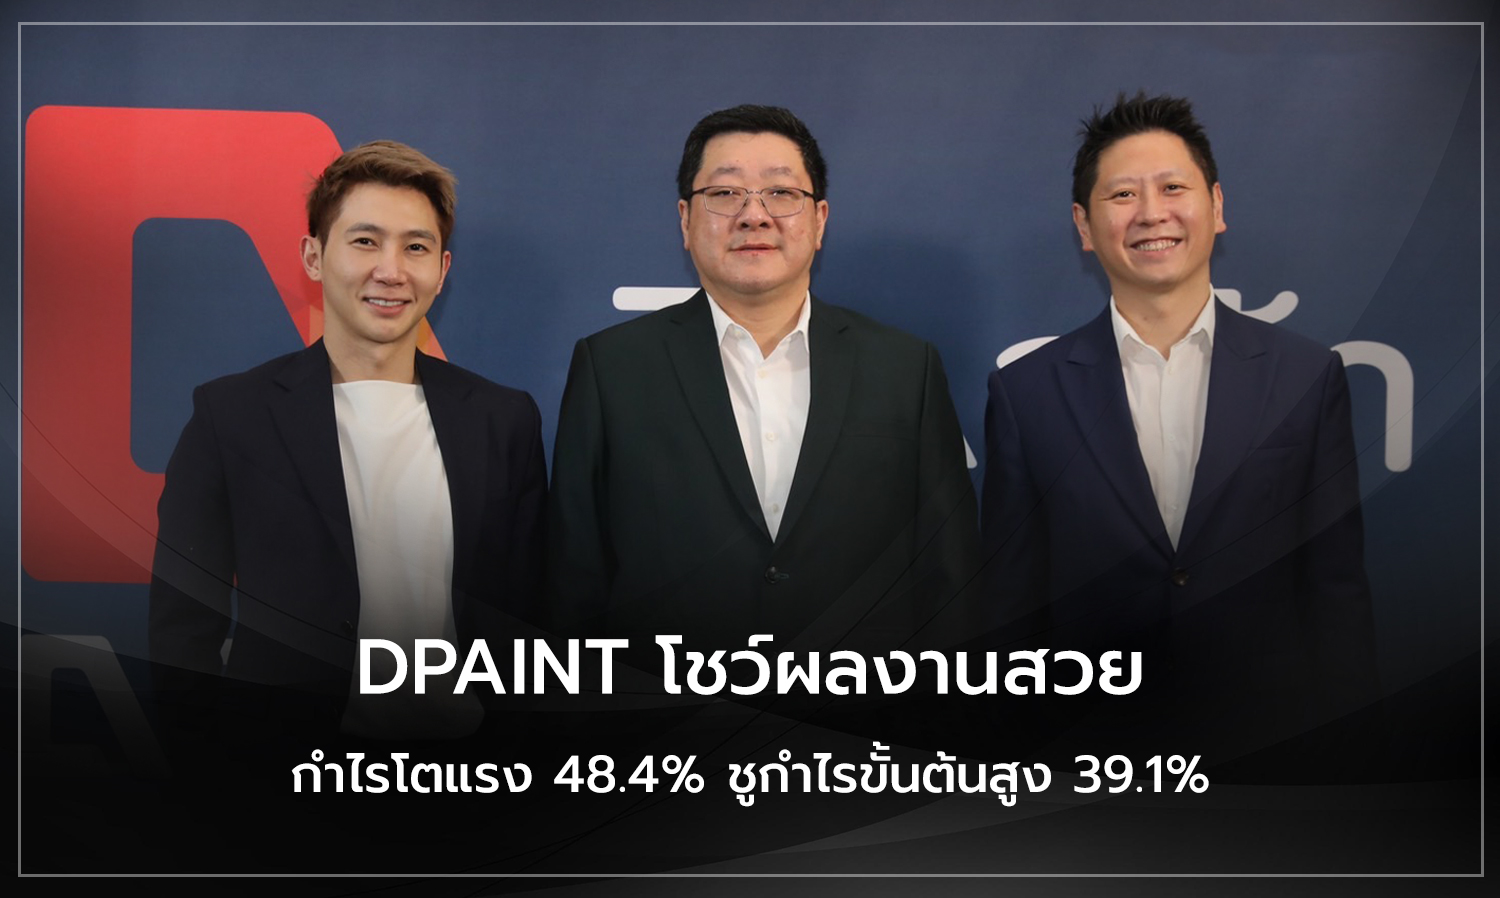 DPAINT โชว์ผลงานสวย กำไรโตแรง 48.4% ชูกำไรขั้นต้นสูง 39.1%